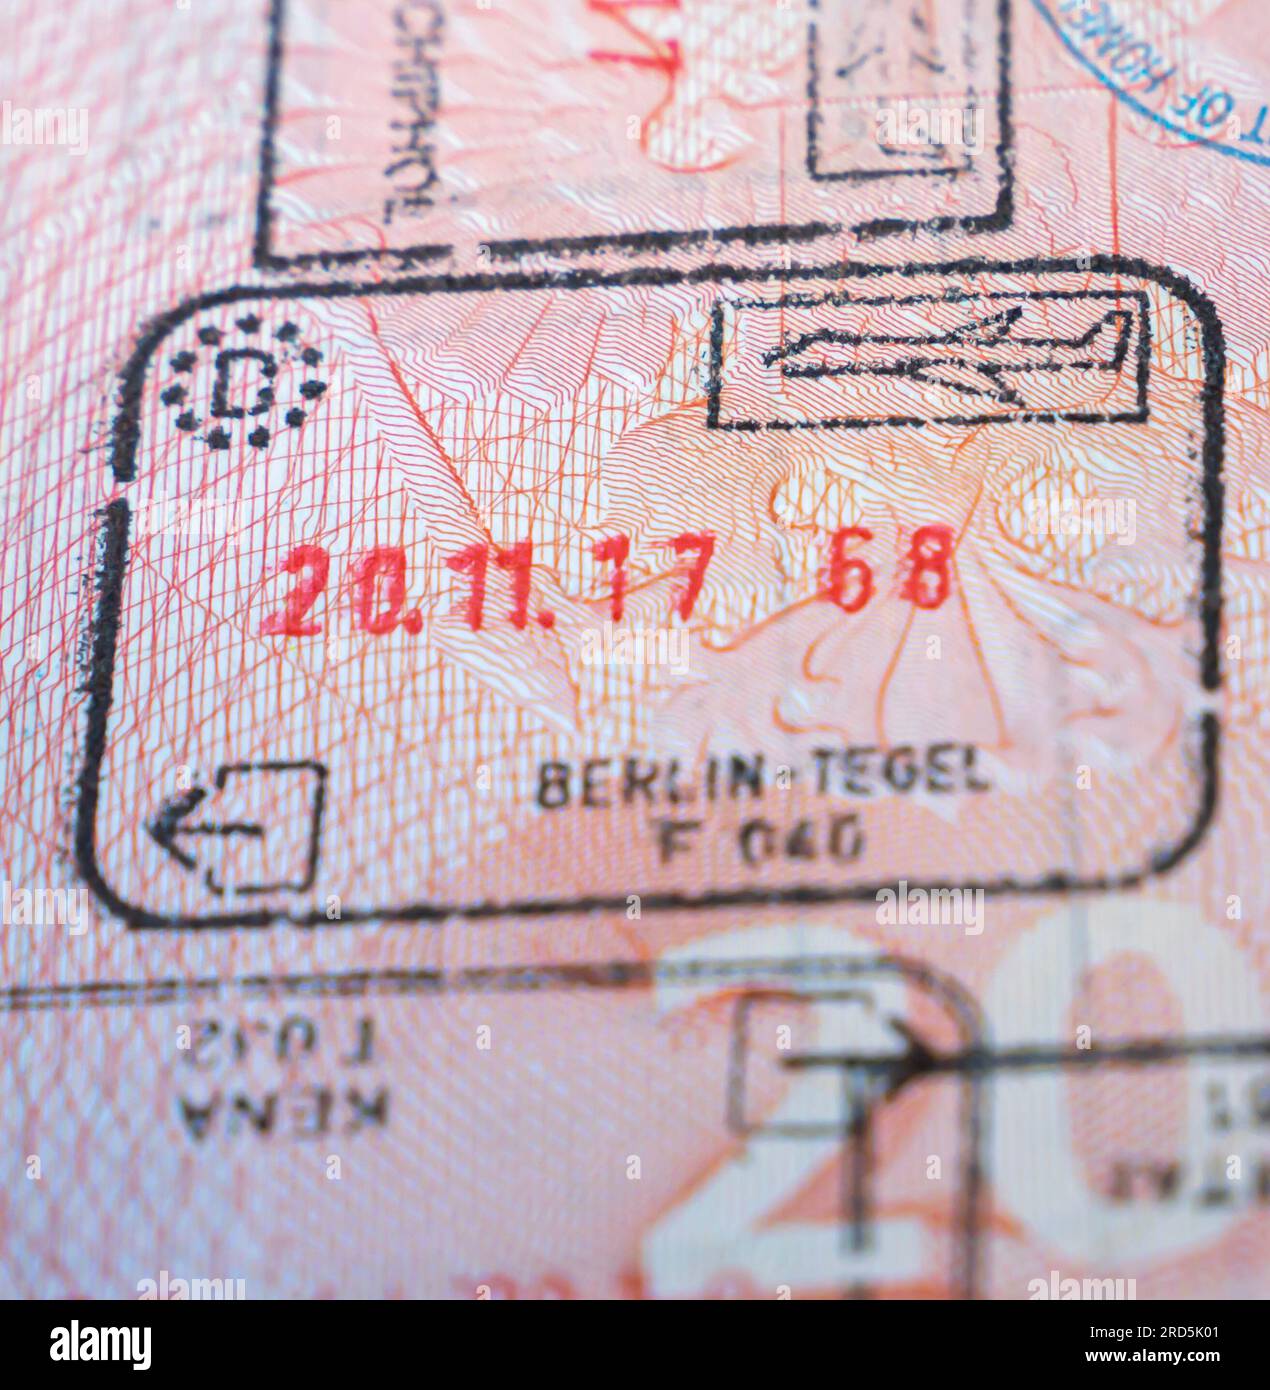 Germany Berlin  border crossing stamp in an open passport. Berlin Tegel Airport exit passport stamp 2017 Stock Photo